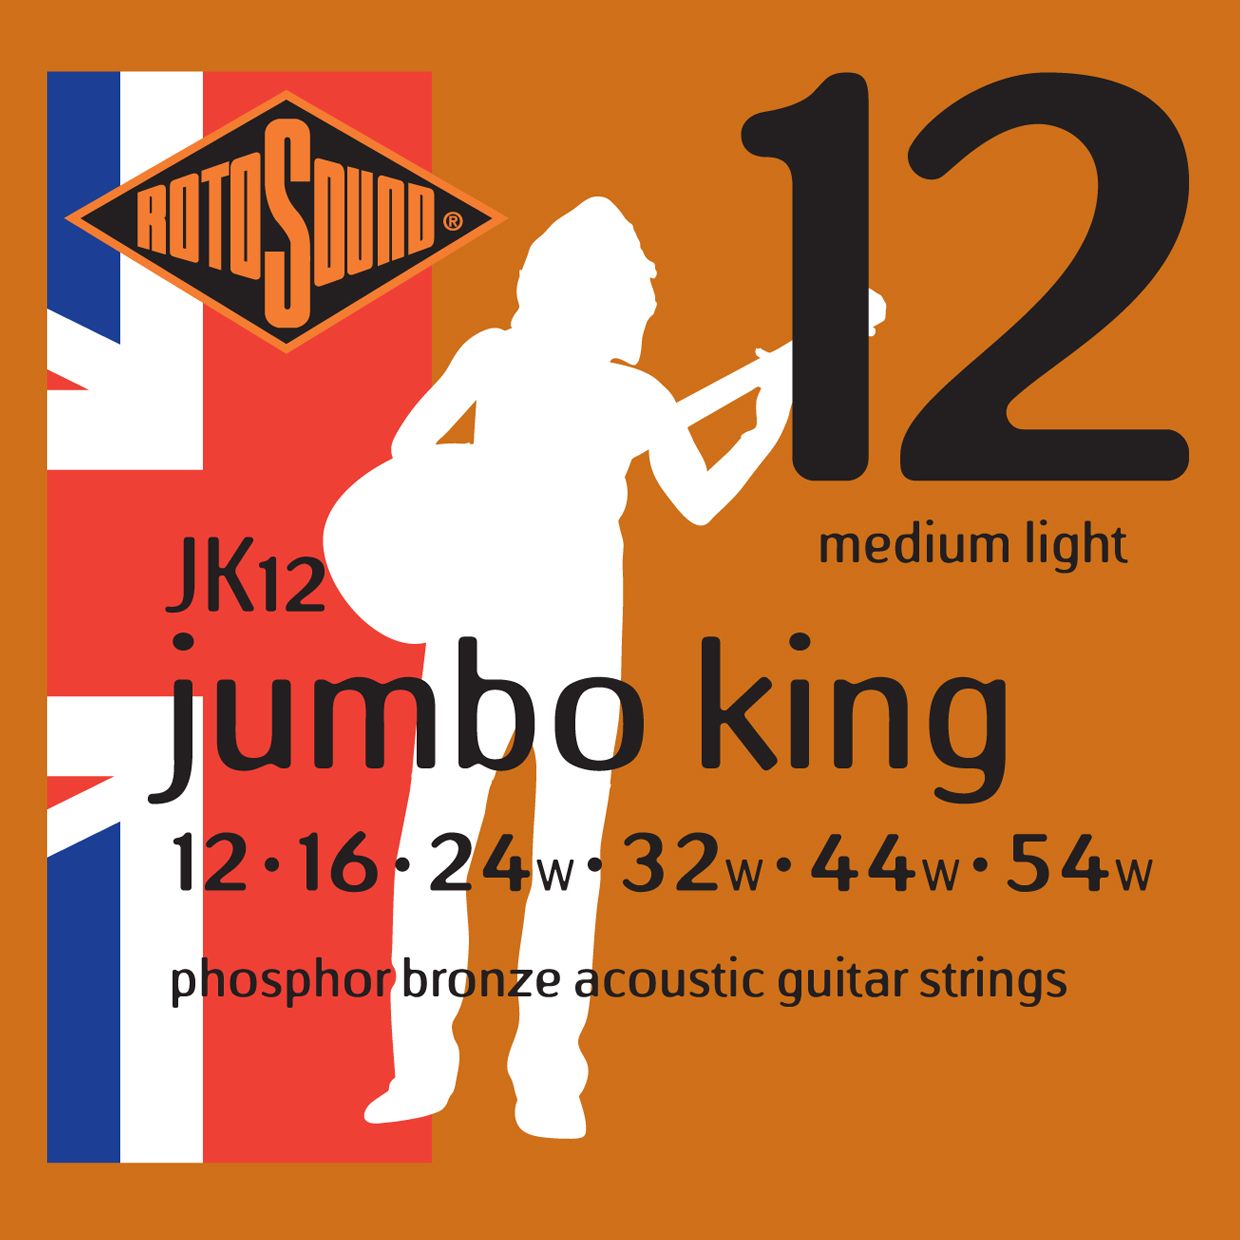 Детальная картинка товара Rotosound JK12 JUMBO в магазине Музыкальная Тема